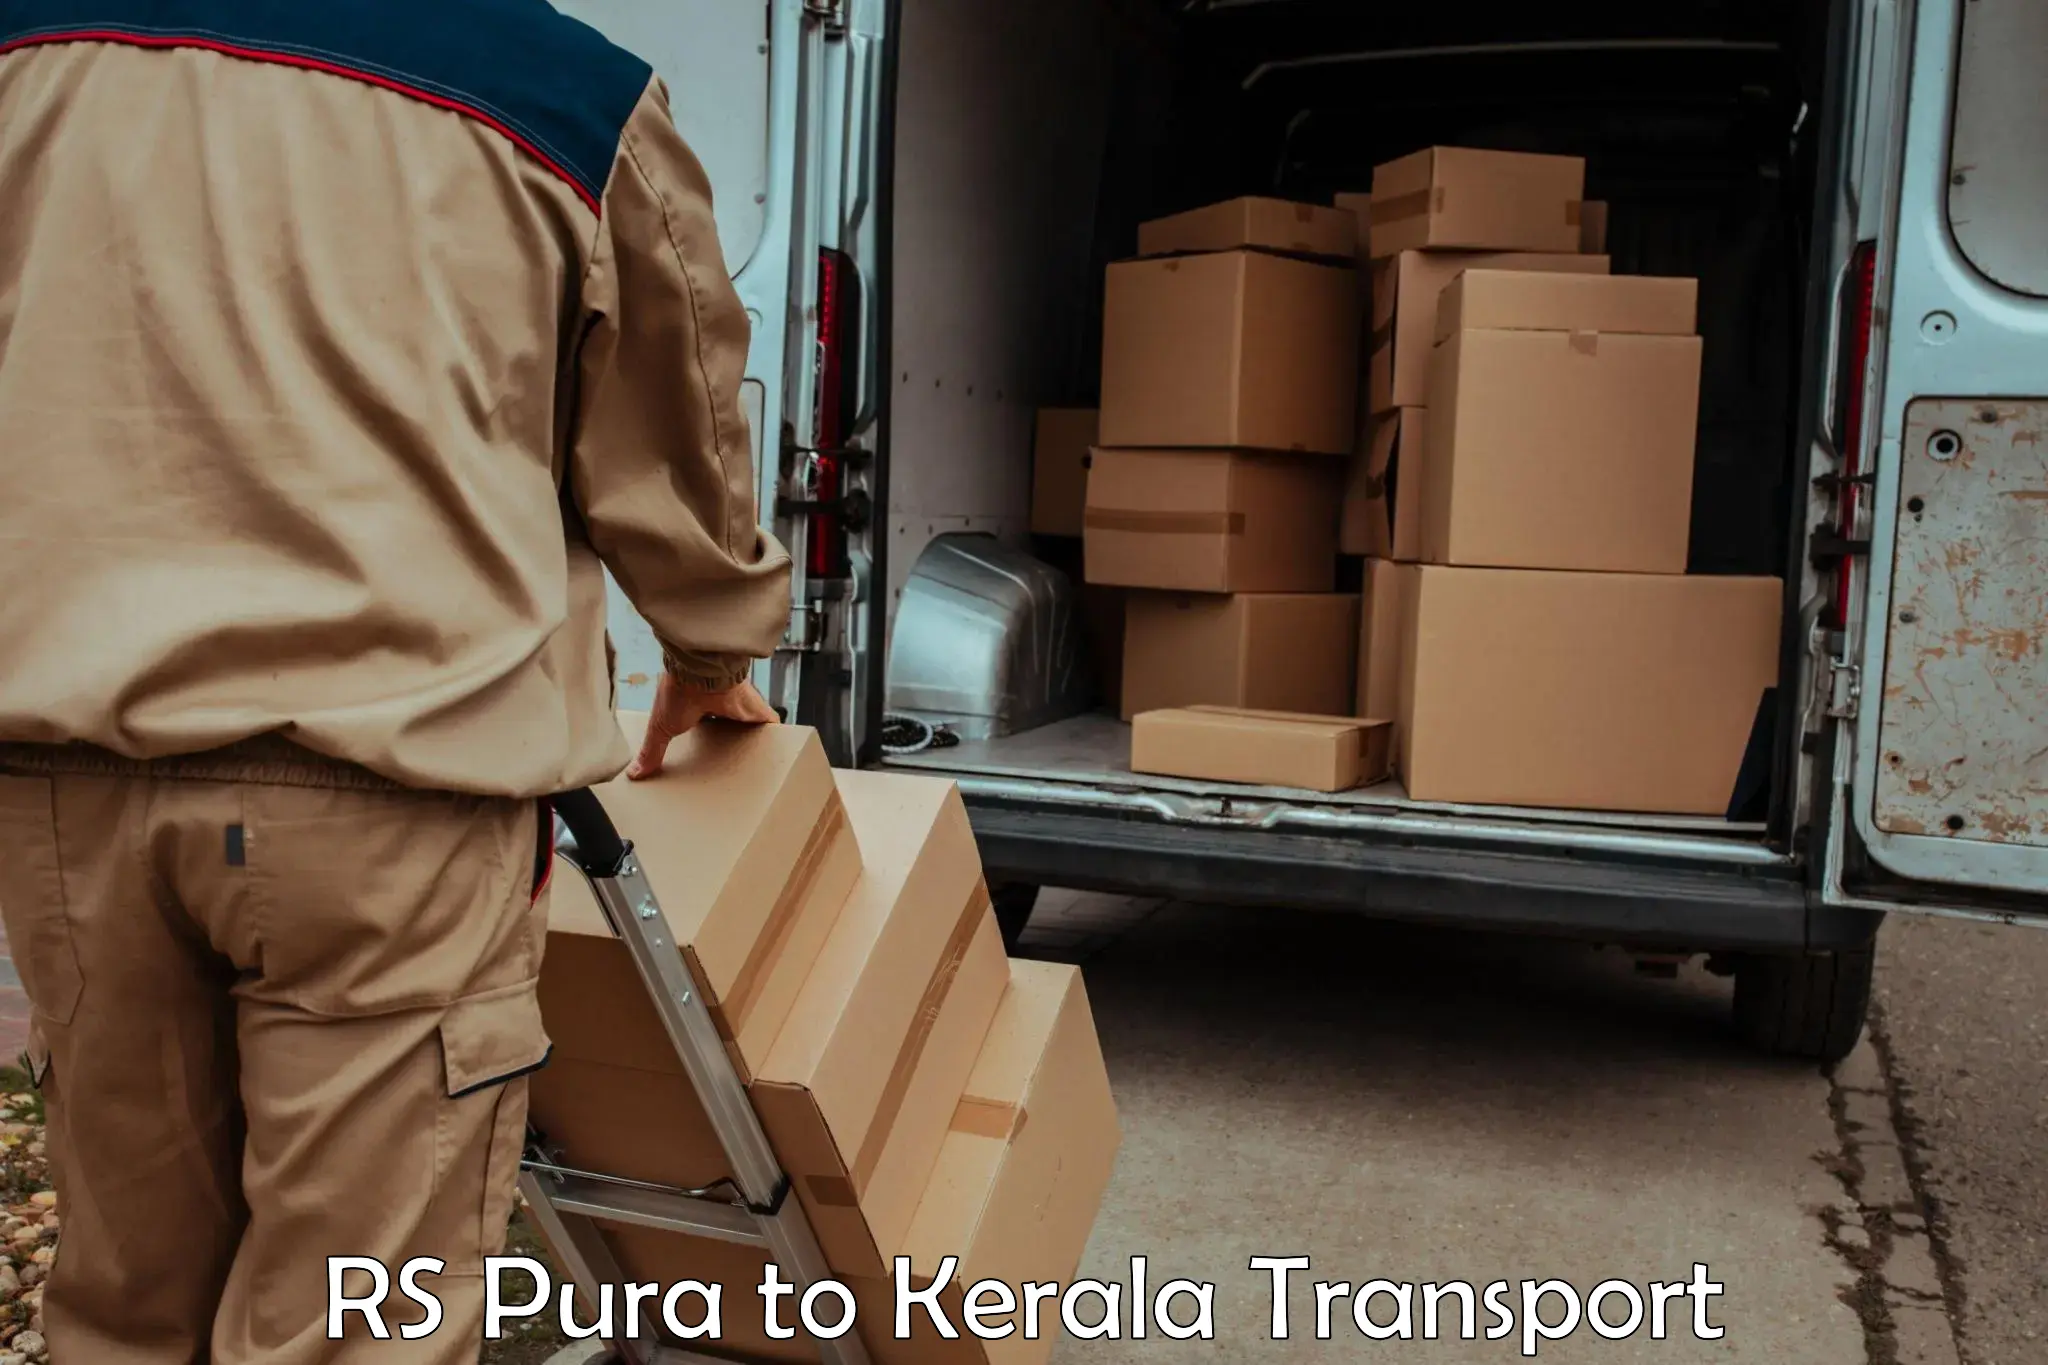 Logistics transportation services RS Pura to Calicut